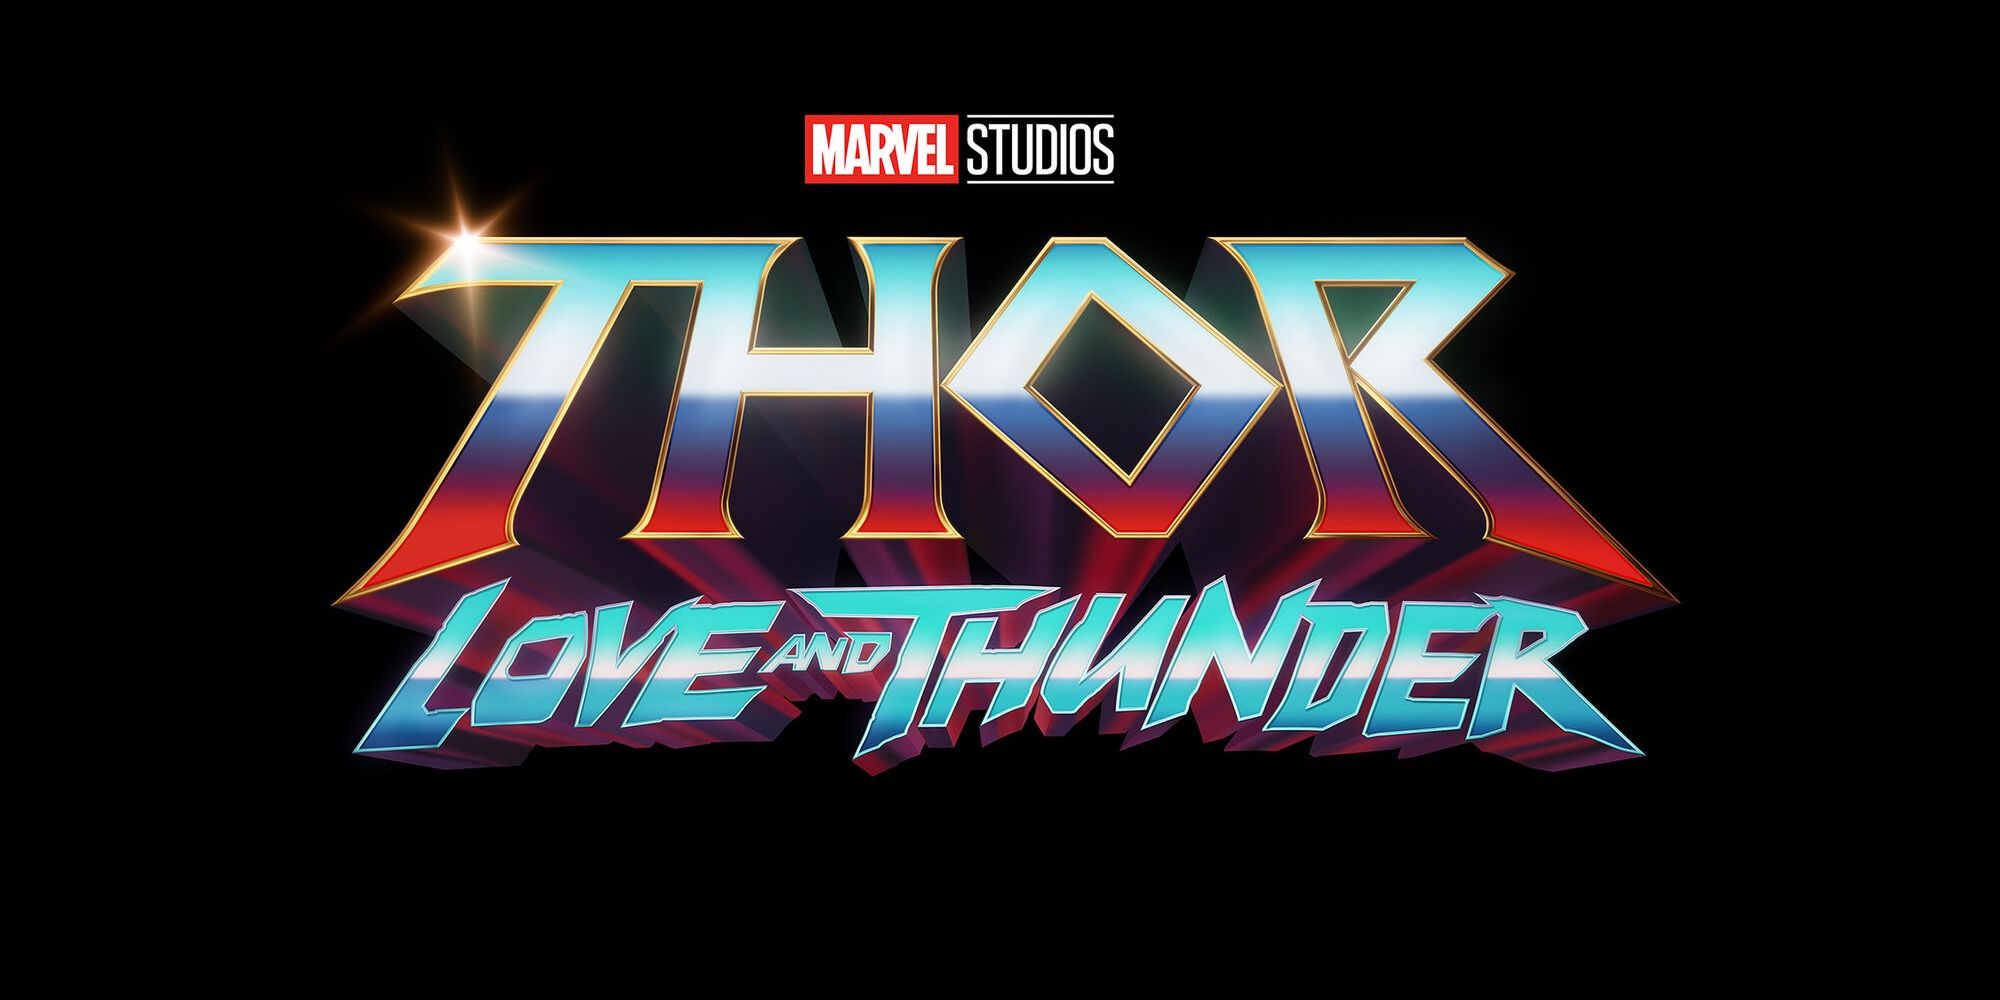 Thor: Amor y trueno – Lo que sabemos hasta ahora